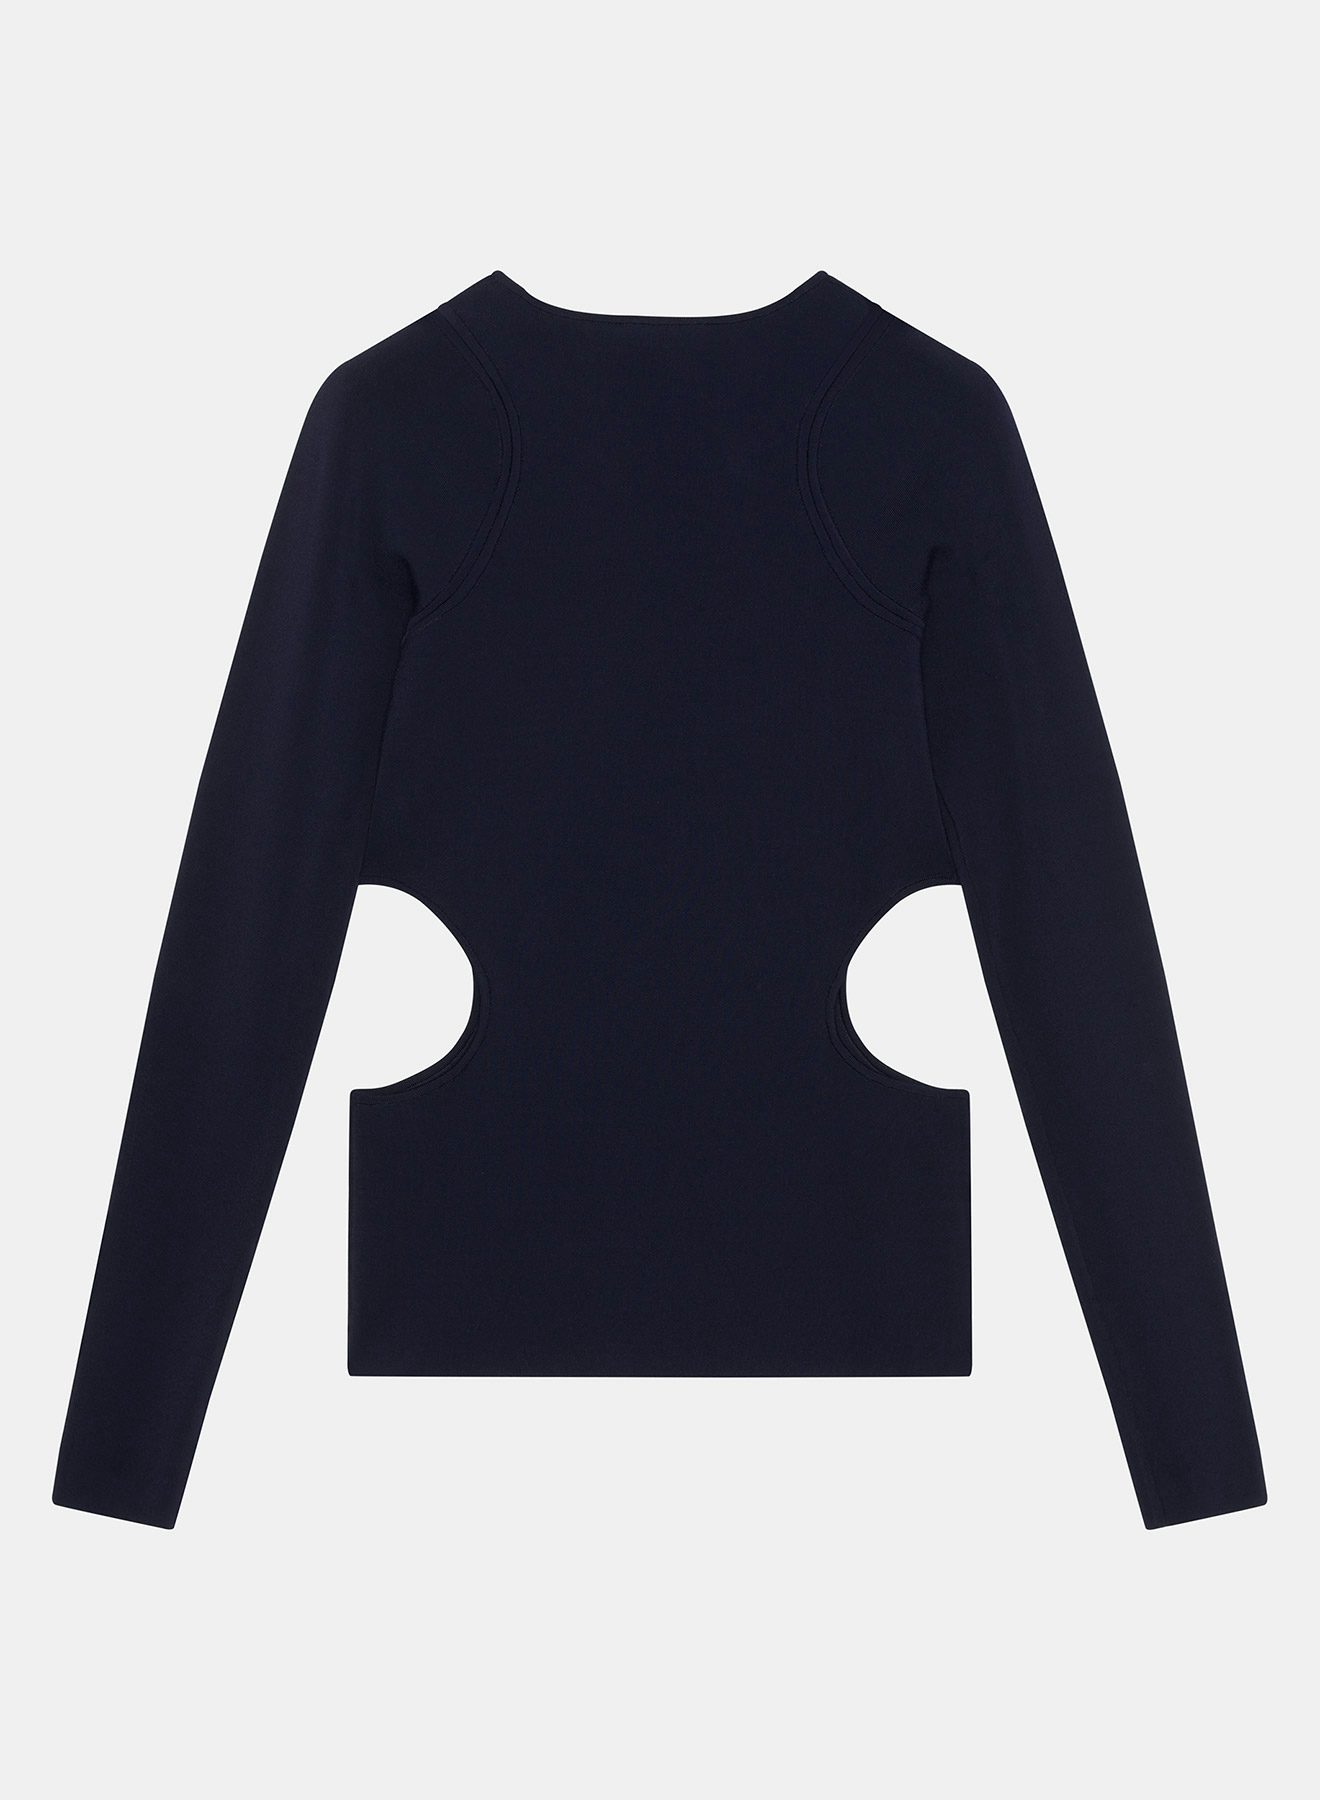 Navy blue Milano sweater open at the hips - Nina Ricci